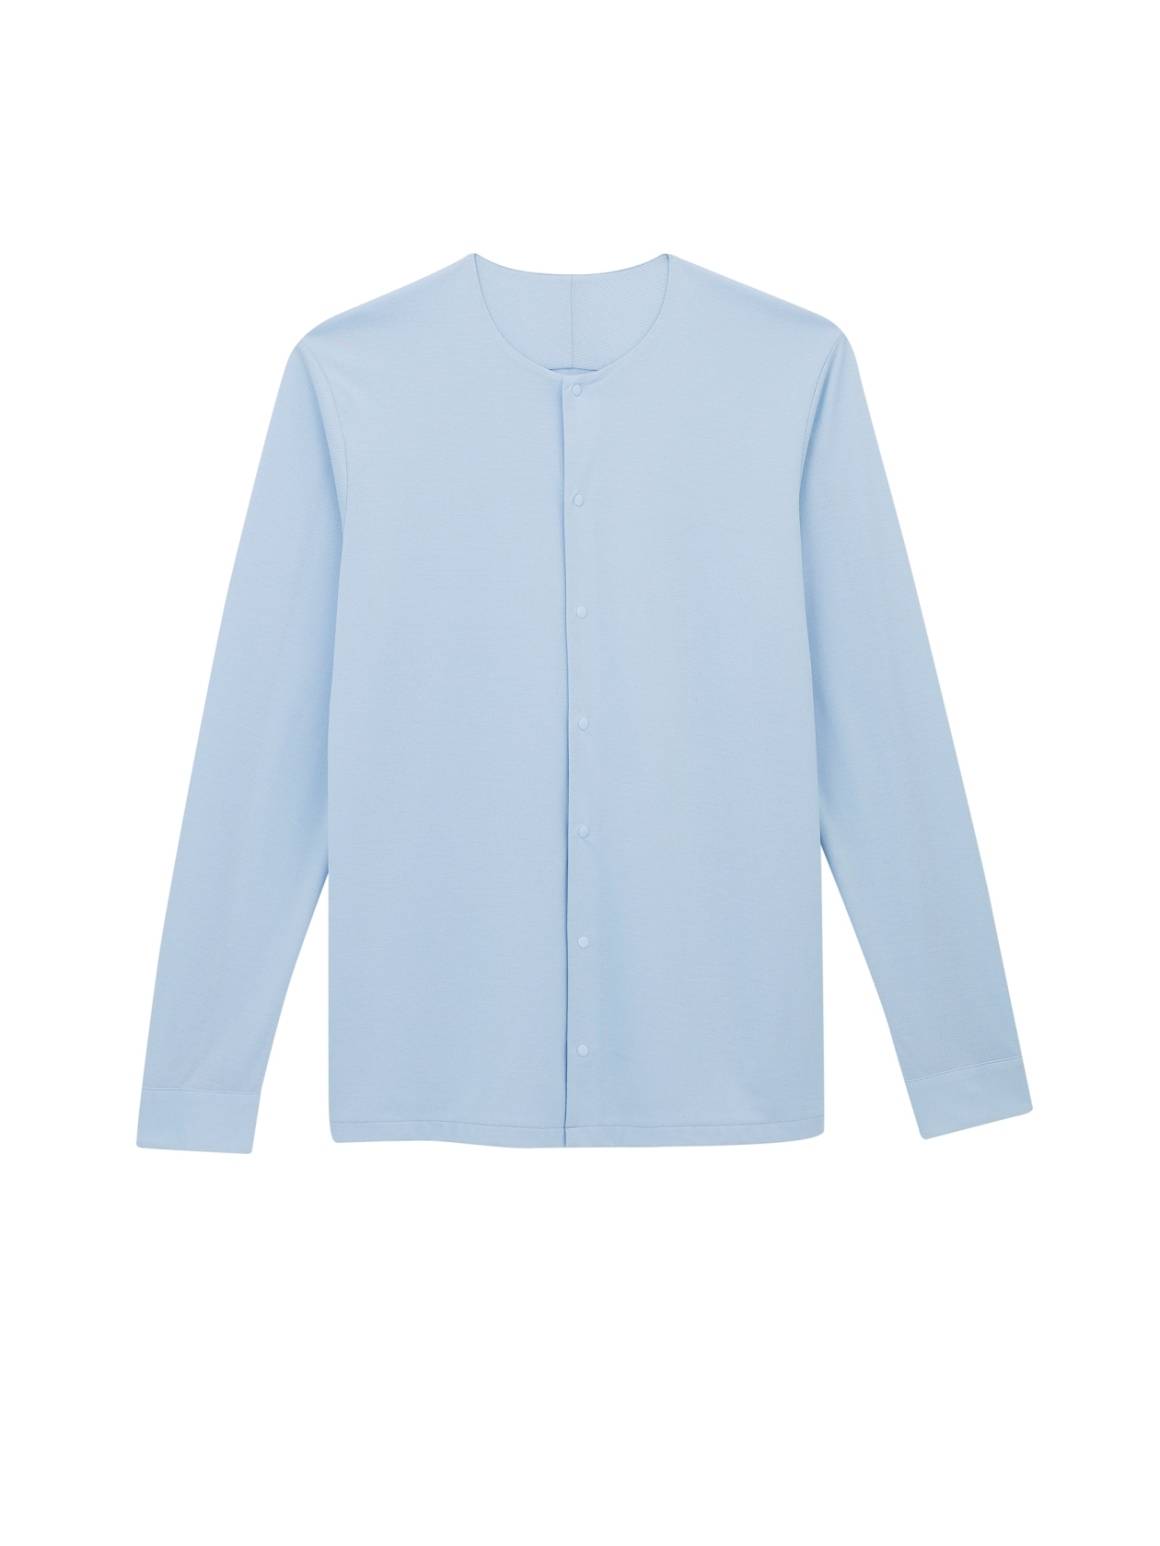 冇領恤衫係近年強勢時裝item，淺藍色感覺更加獨特。$550